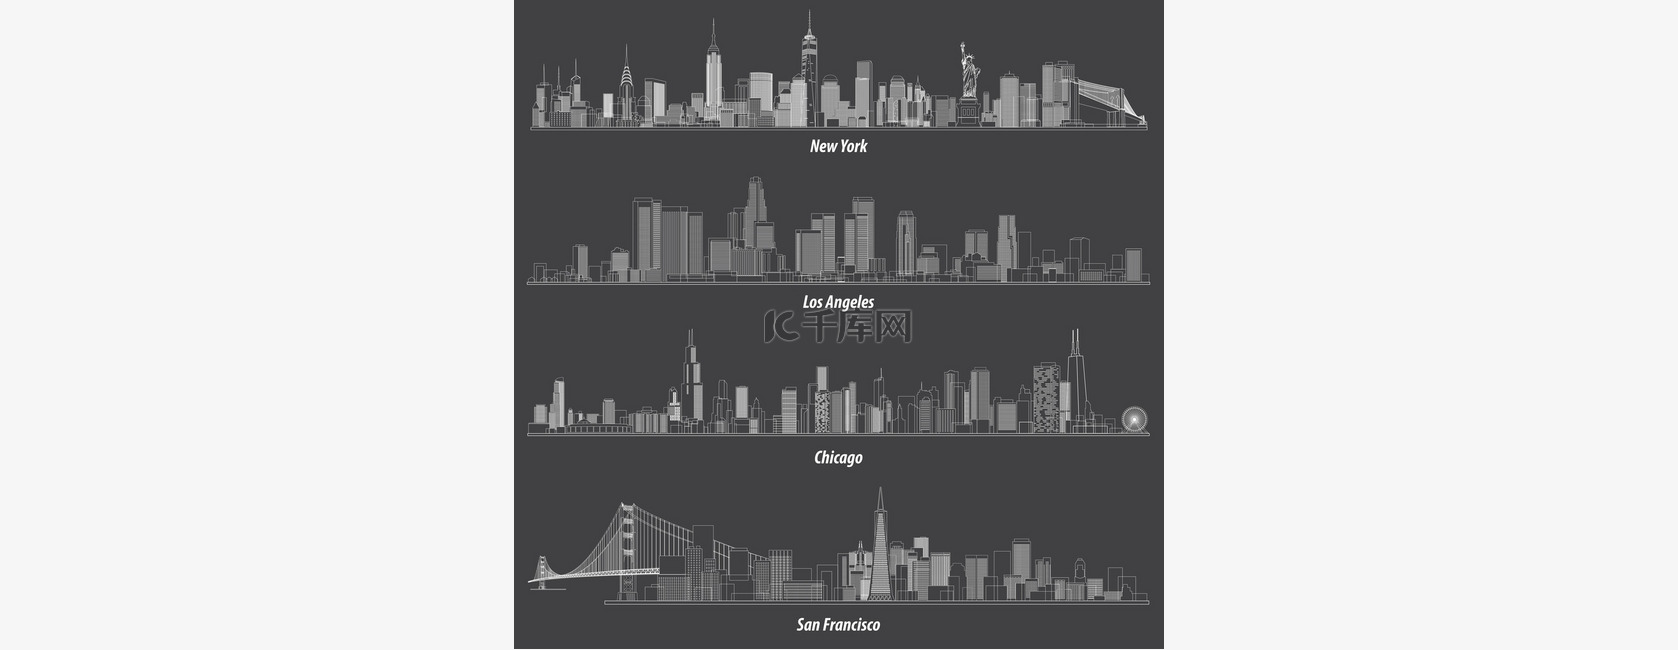 美国的抽象插图概述了城市天际线